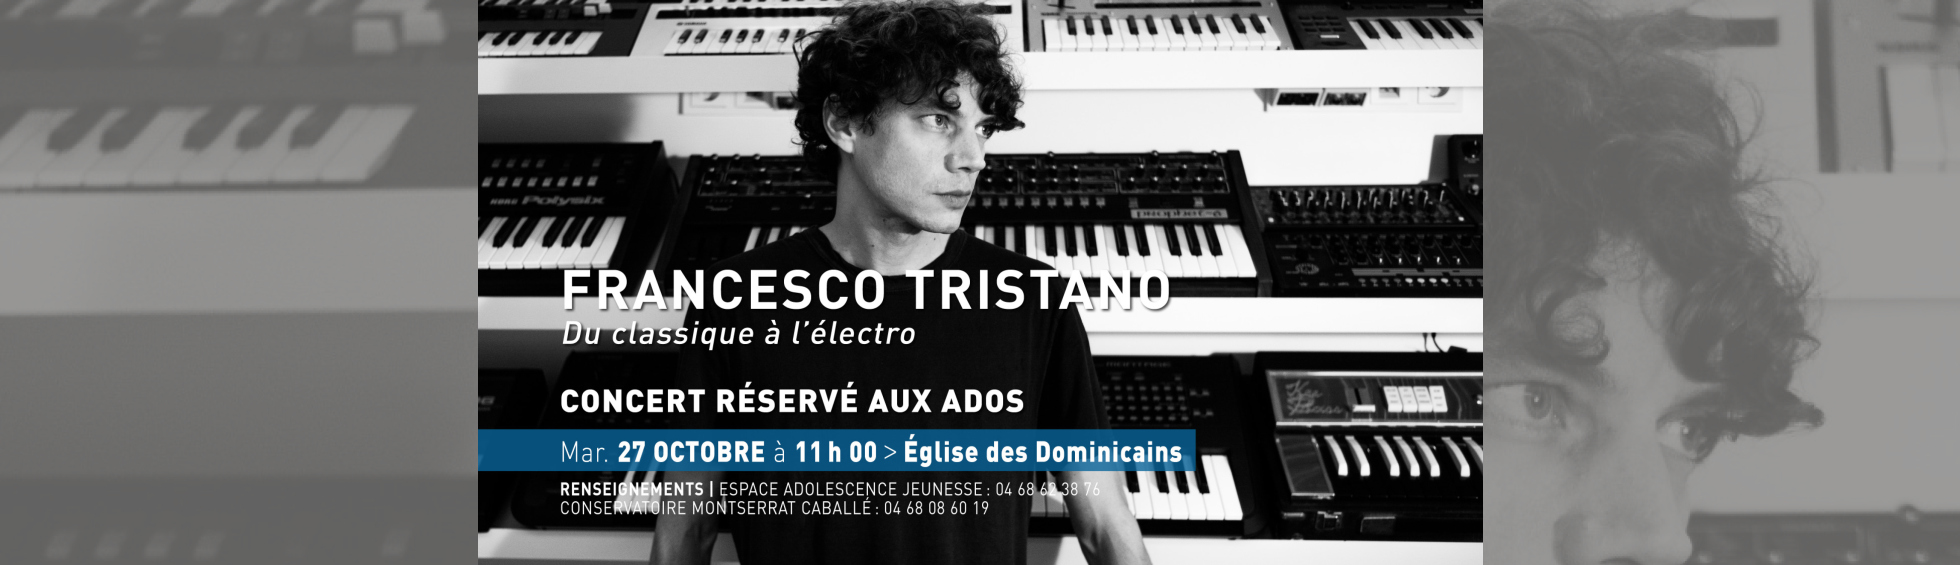 FRANCESCO TRISTANO - Concert spécial Ados